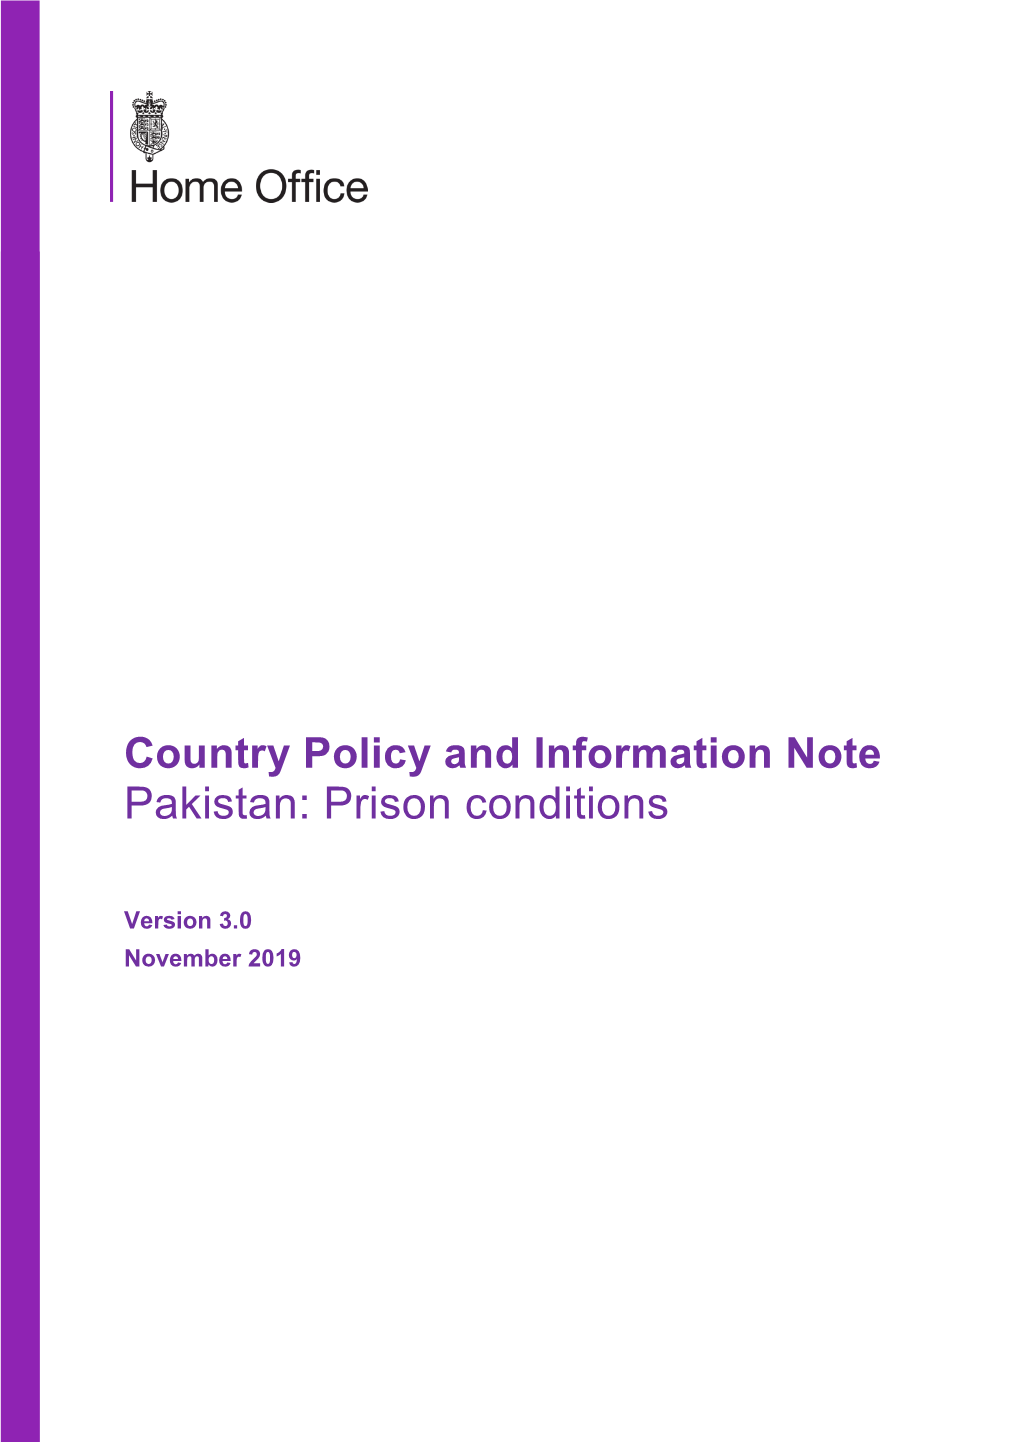 Pakistan: Prison Conditions